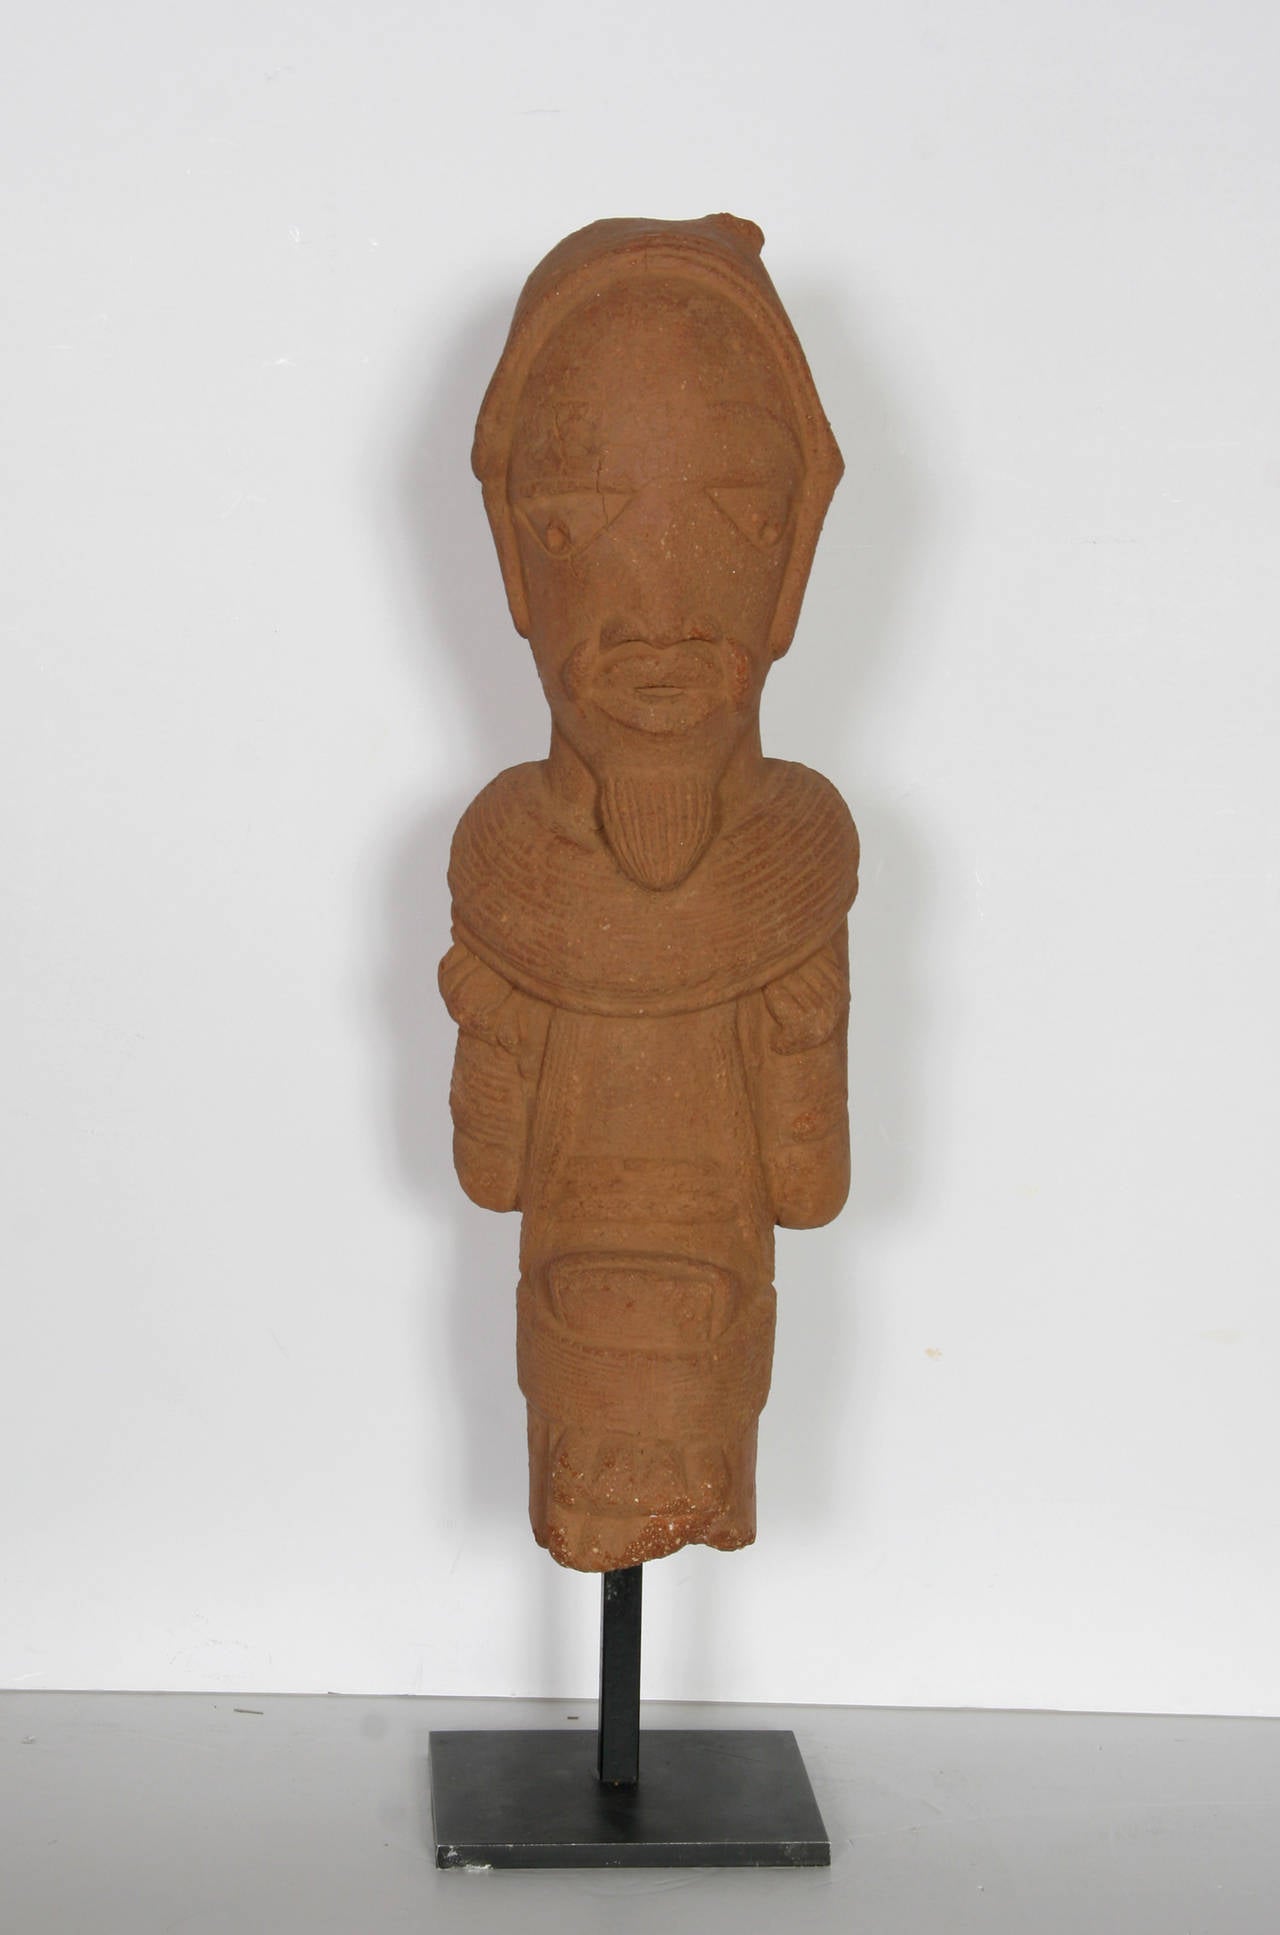 Nigerian Nok terra cotta figurine, 500 BC-200 AD